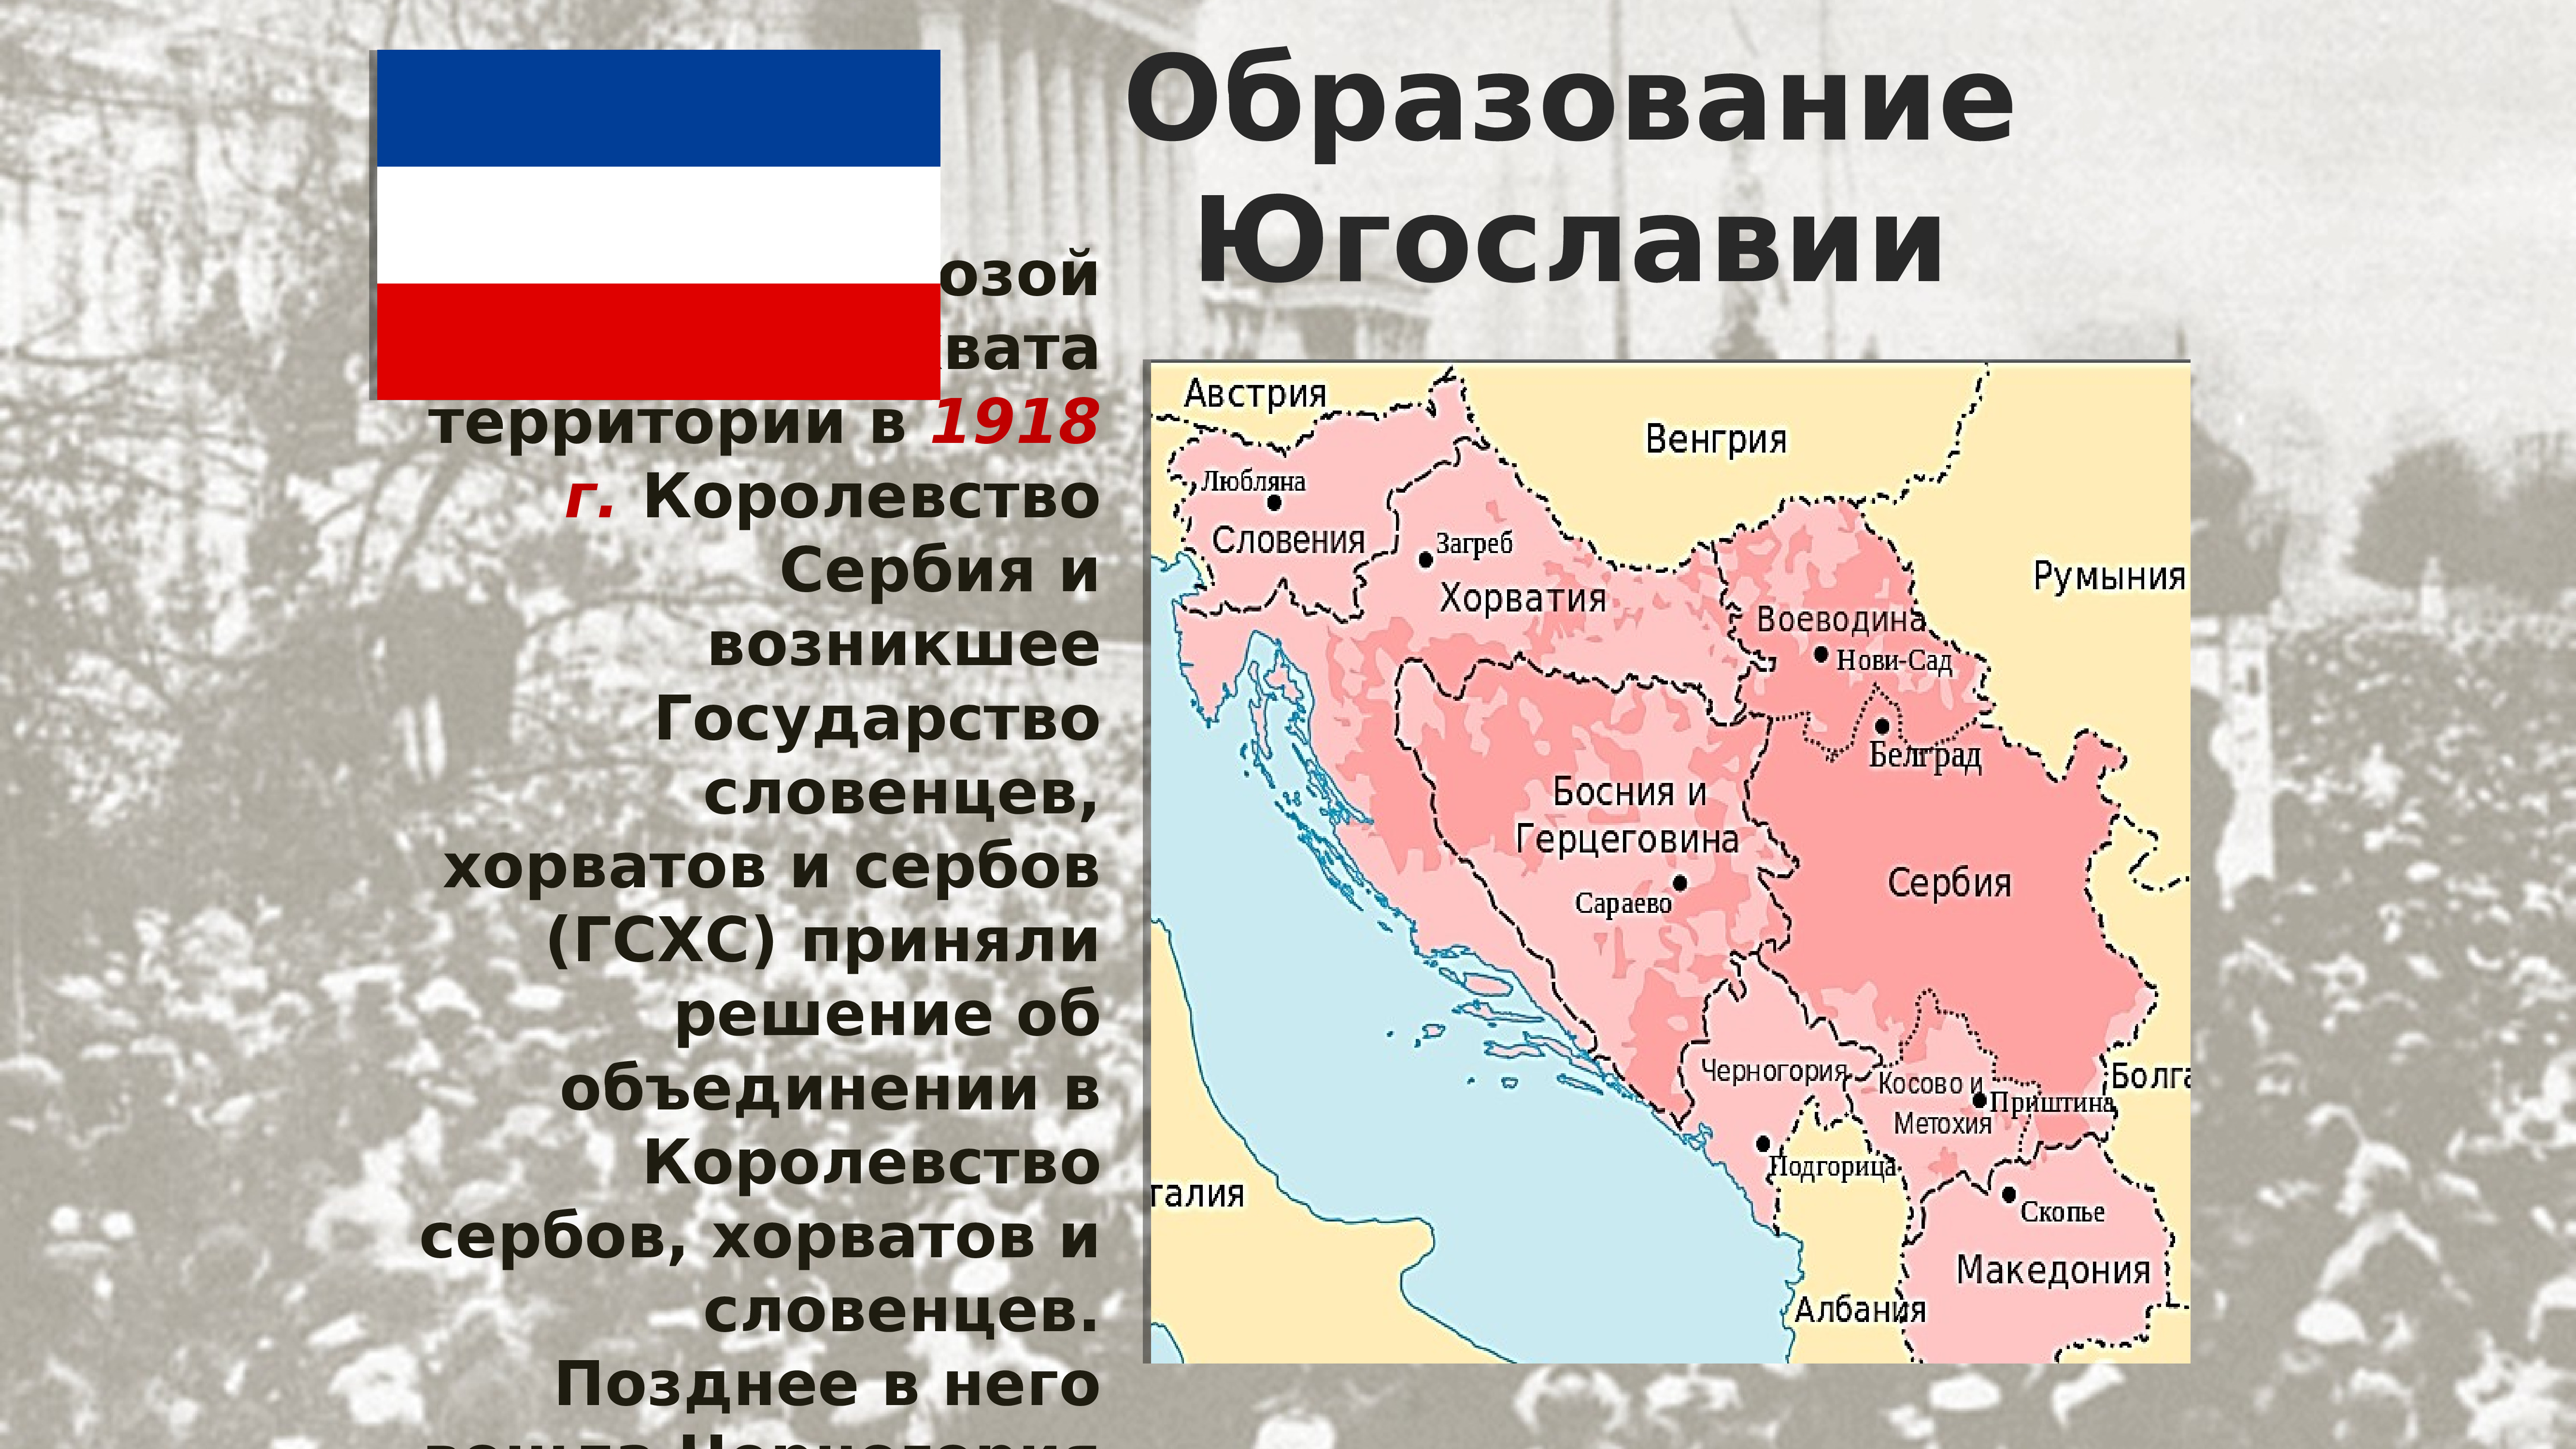 Чехословакия албания венгрия